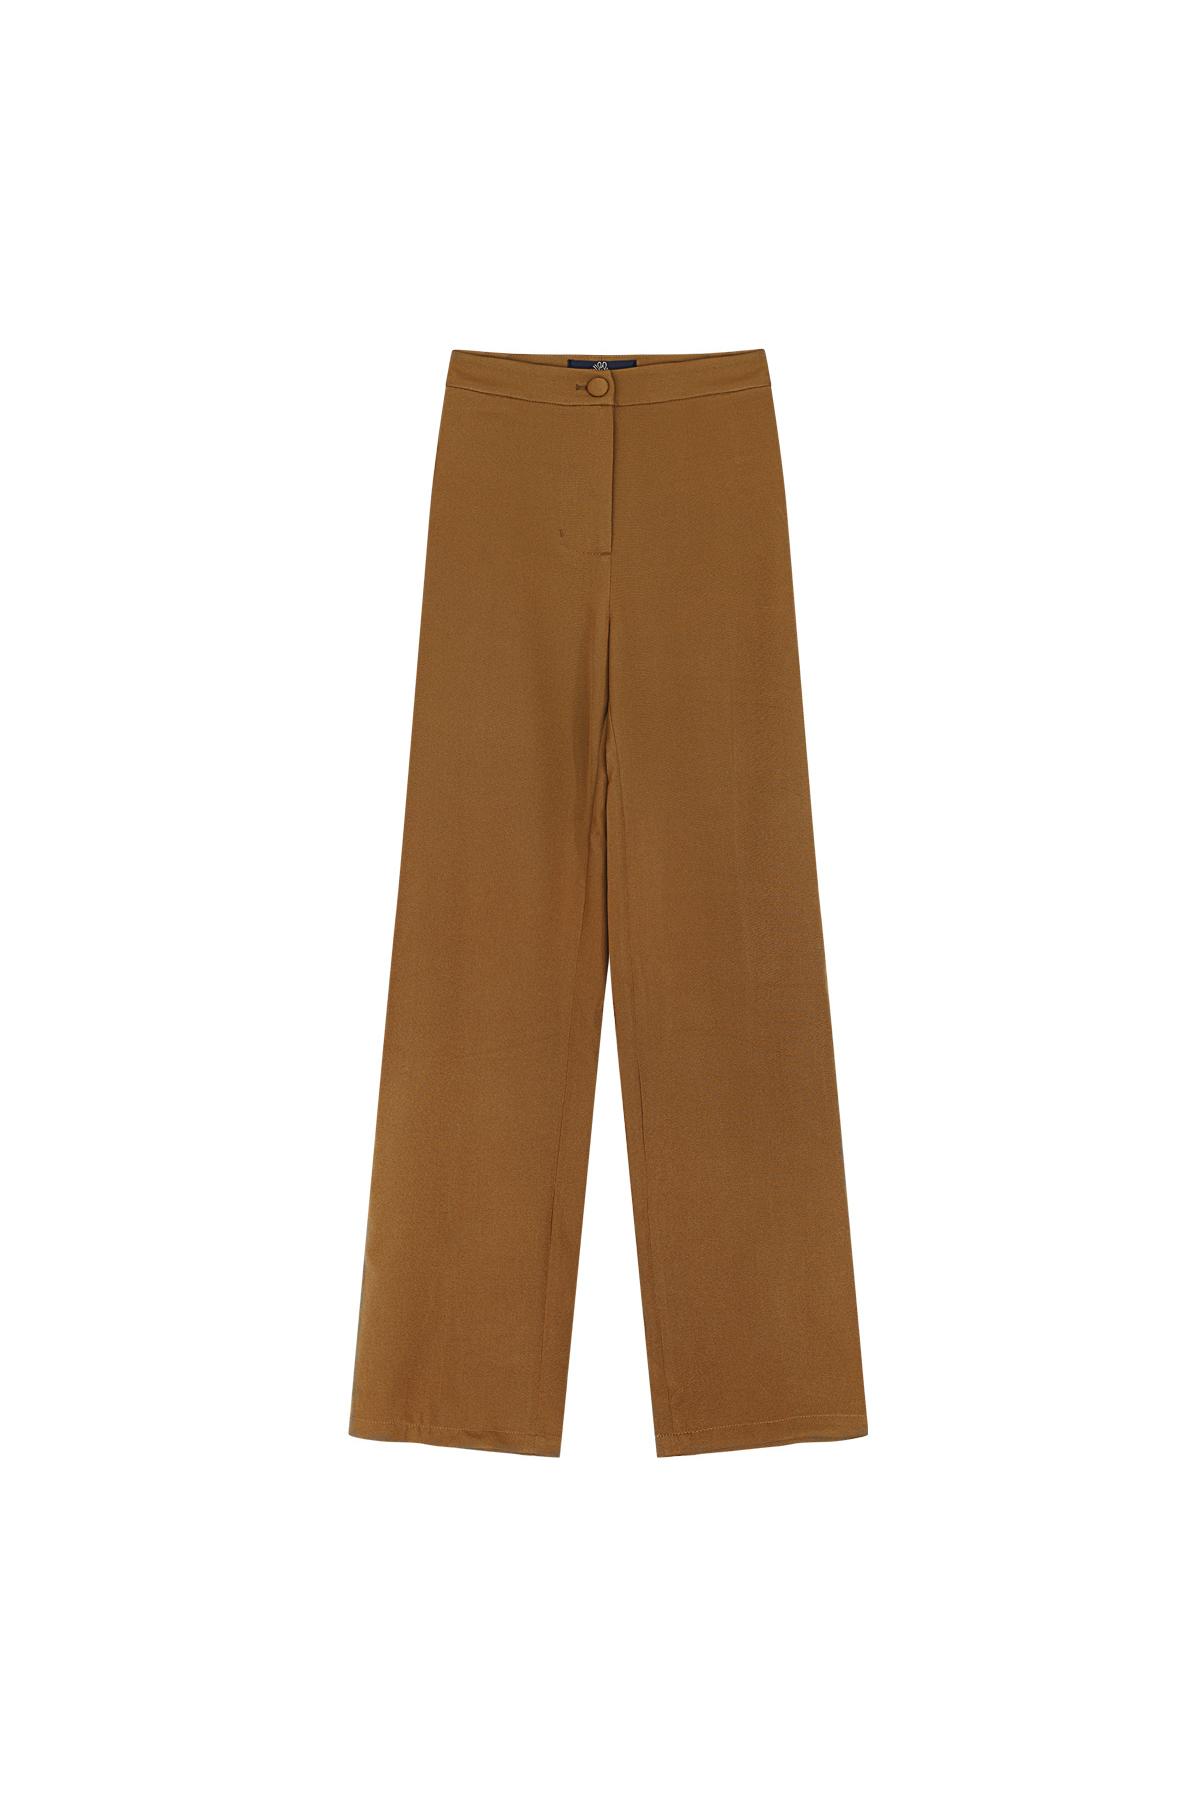 Pantalon basique - Les indispensables des vacances Beige S h5 